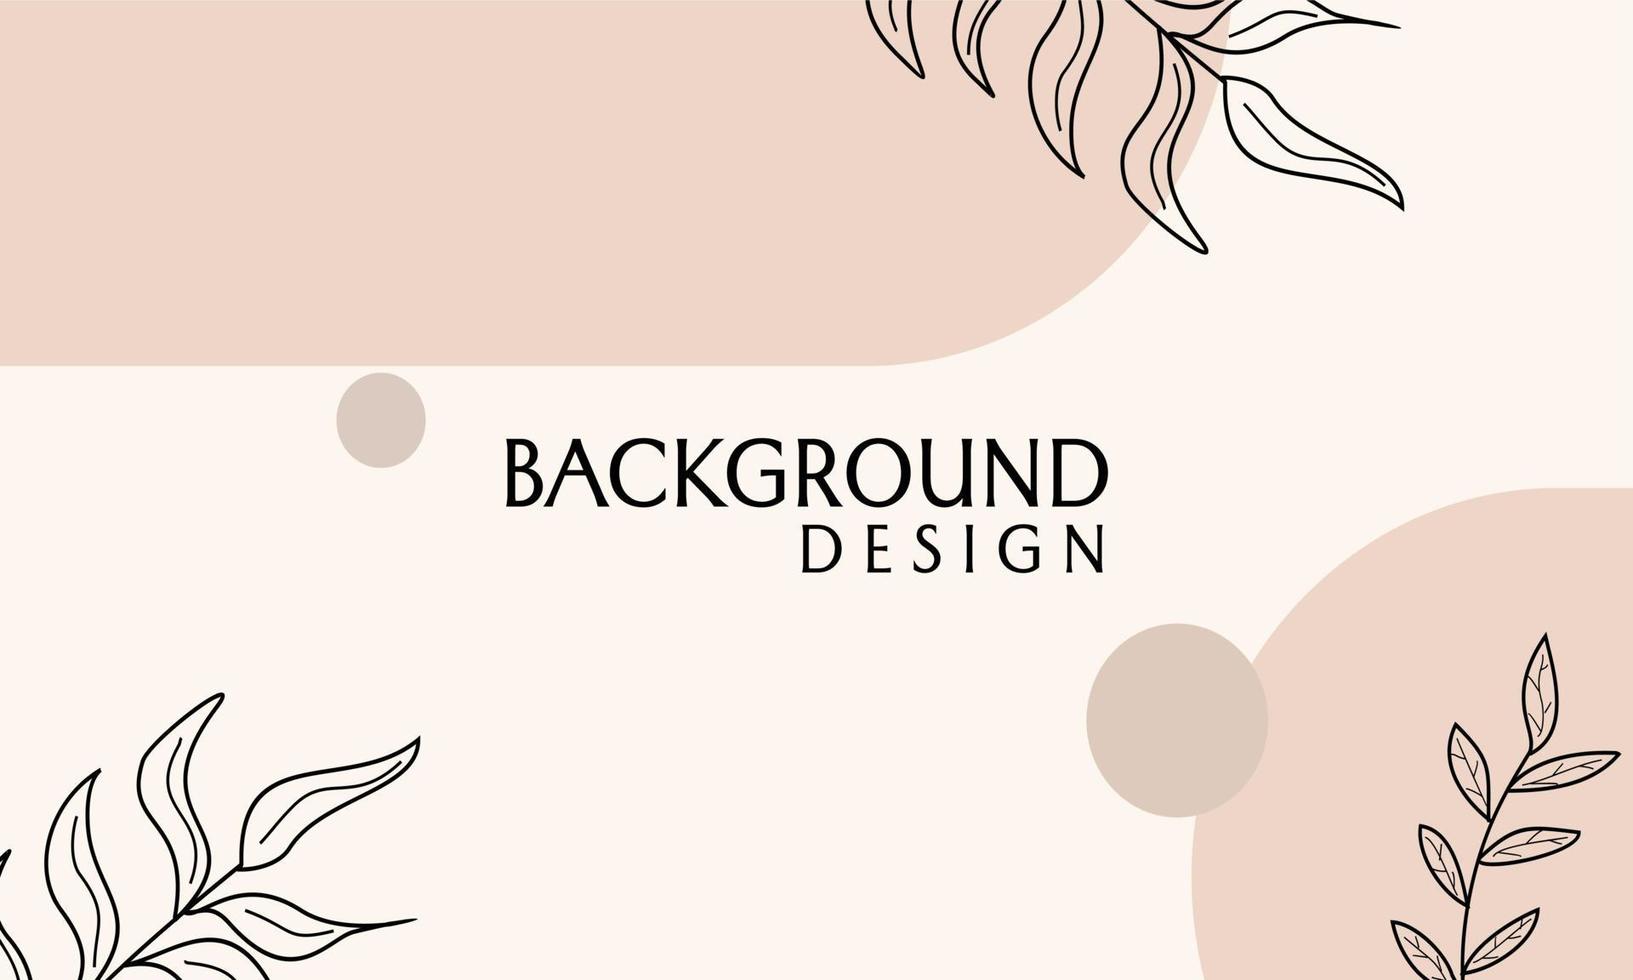 diseño de vector de banner de color marrón con elementos dibujados a mano. Diseño femenino y minimalista.